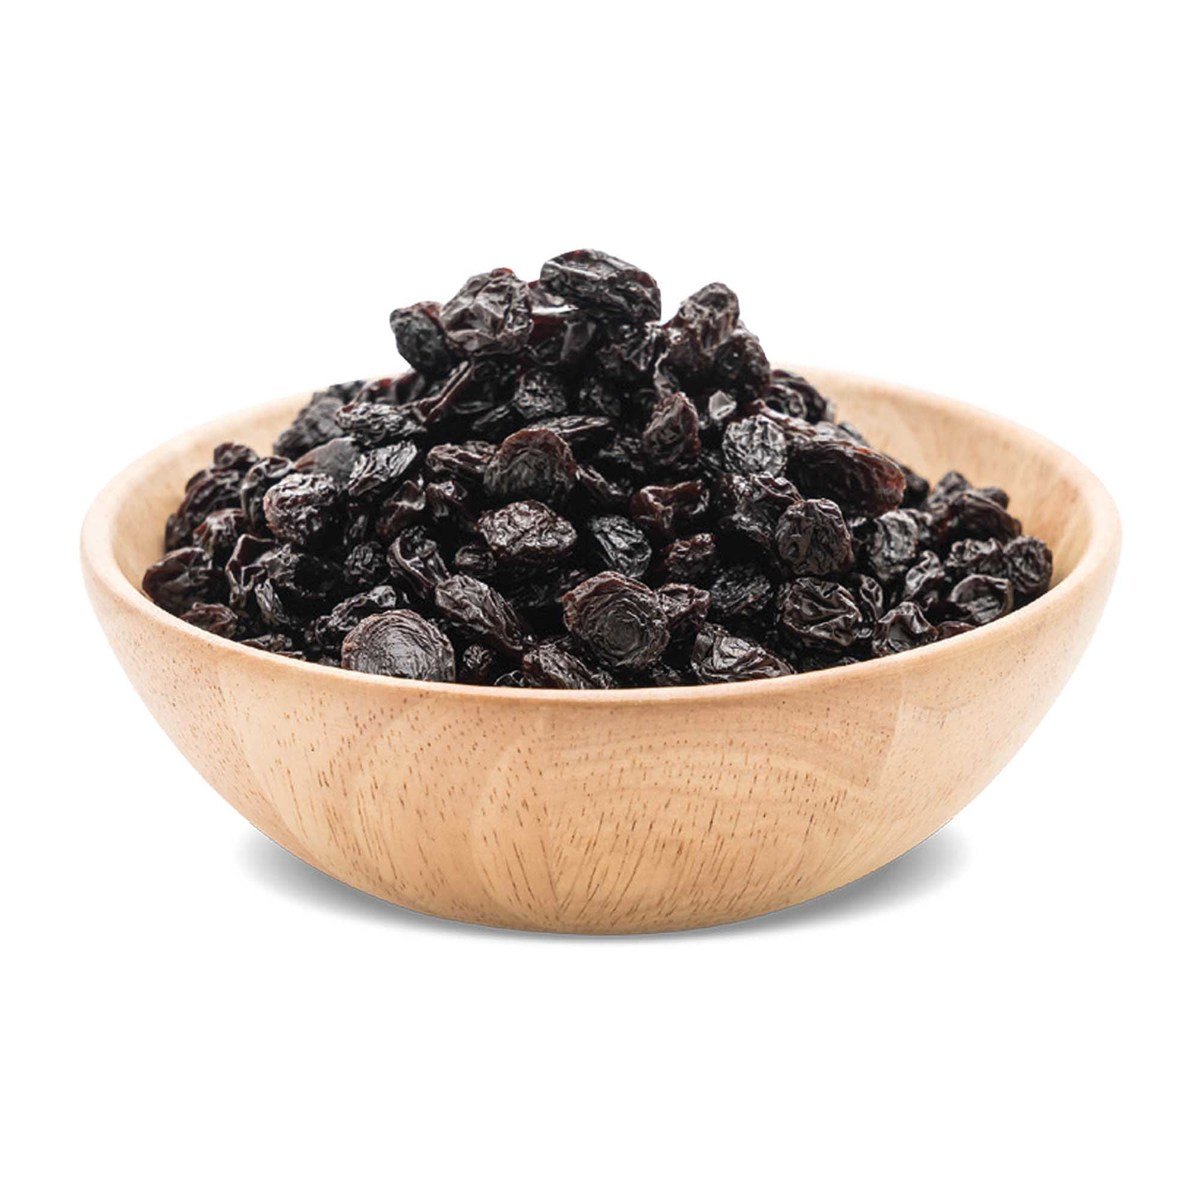 اشتري قم بشراء زبيب أسود 500 جرام Online at Best Price من الموقع - من لولو هايبر ماركت Roastery Dried Fruit في السعودية